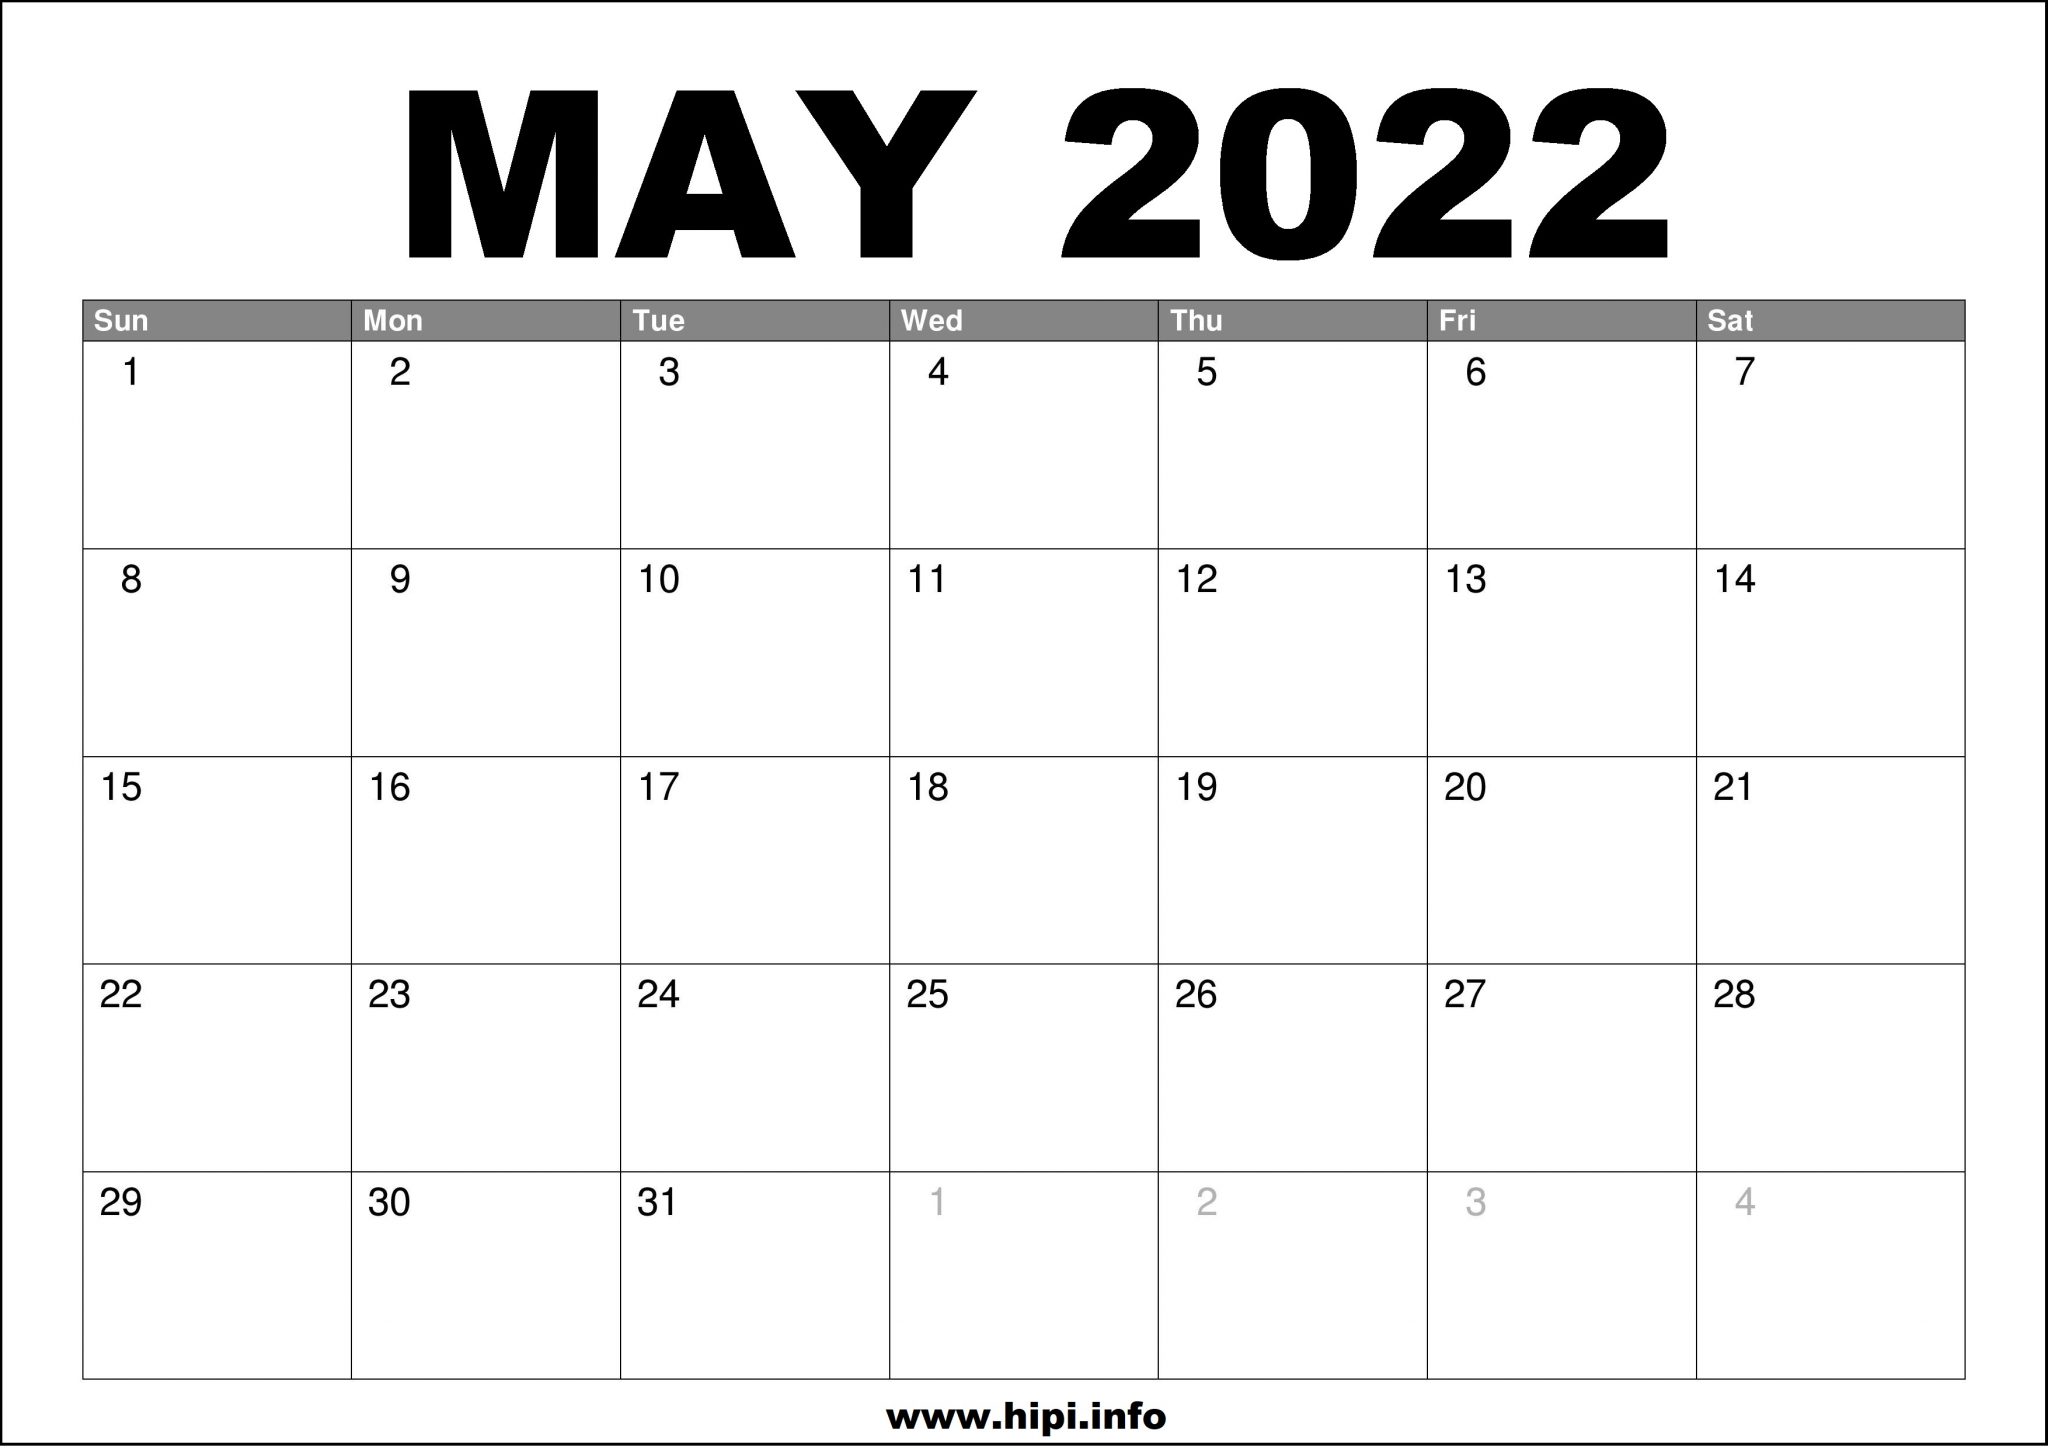 download-printable-may-2022-calendars-ariaatr